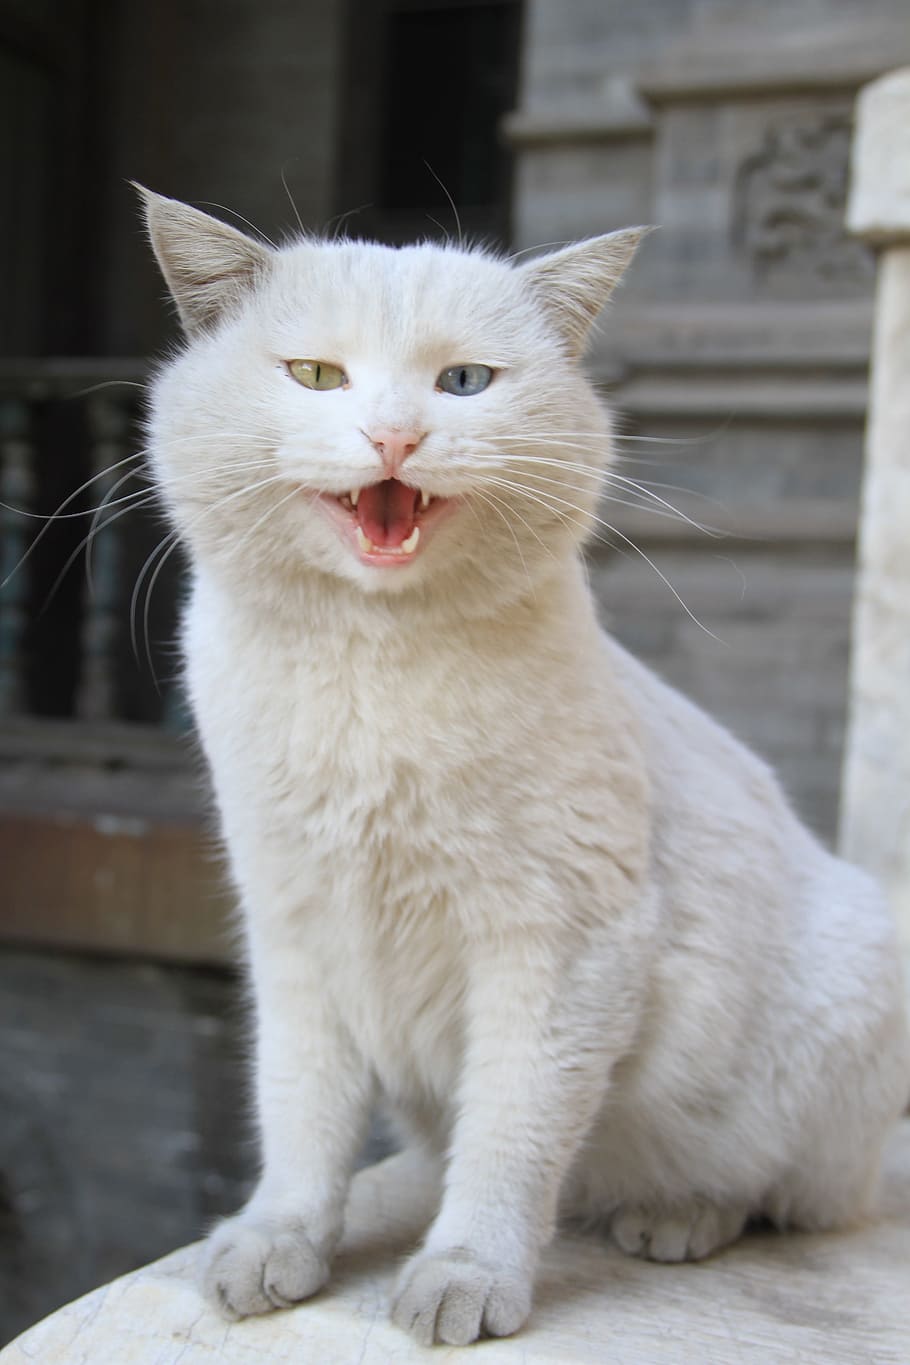 kucing putih bermata aneh, Adegan, Kucing, Jalan, hewan peliharaan, hewan, Kucing domestik, imut, licik, mamalia